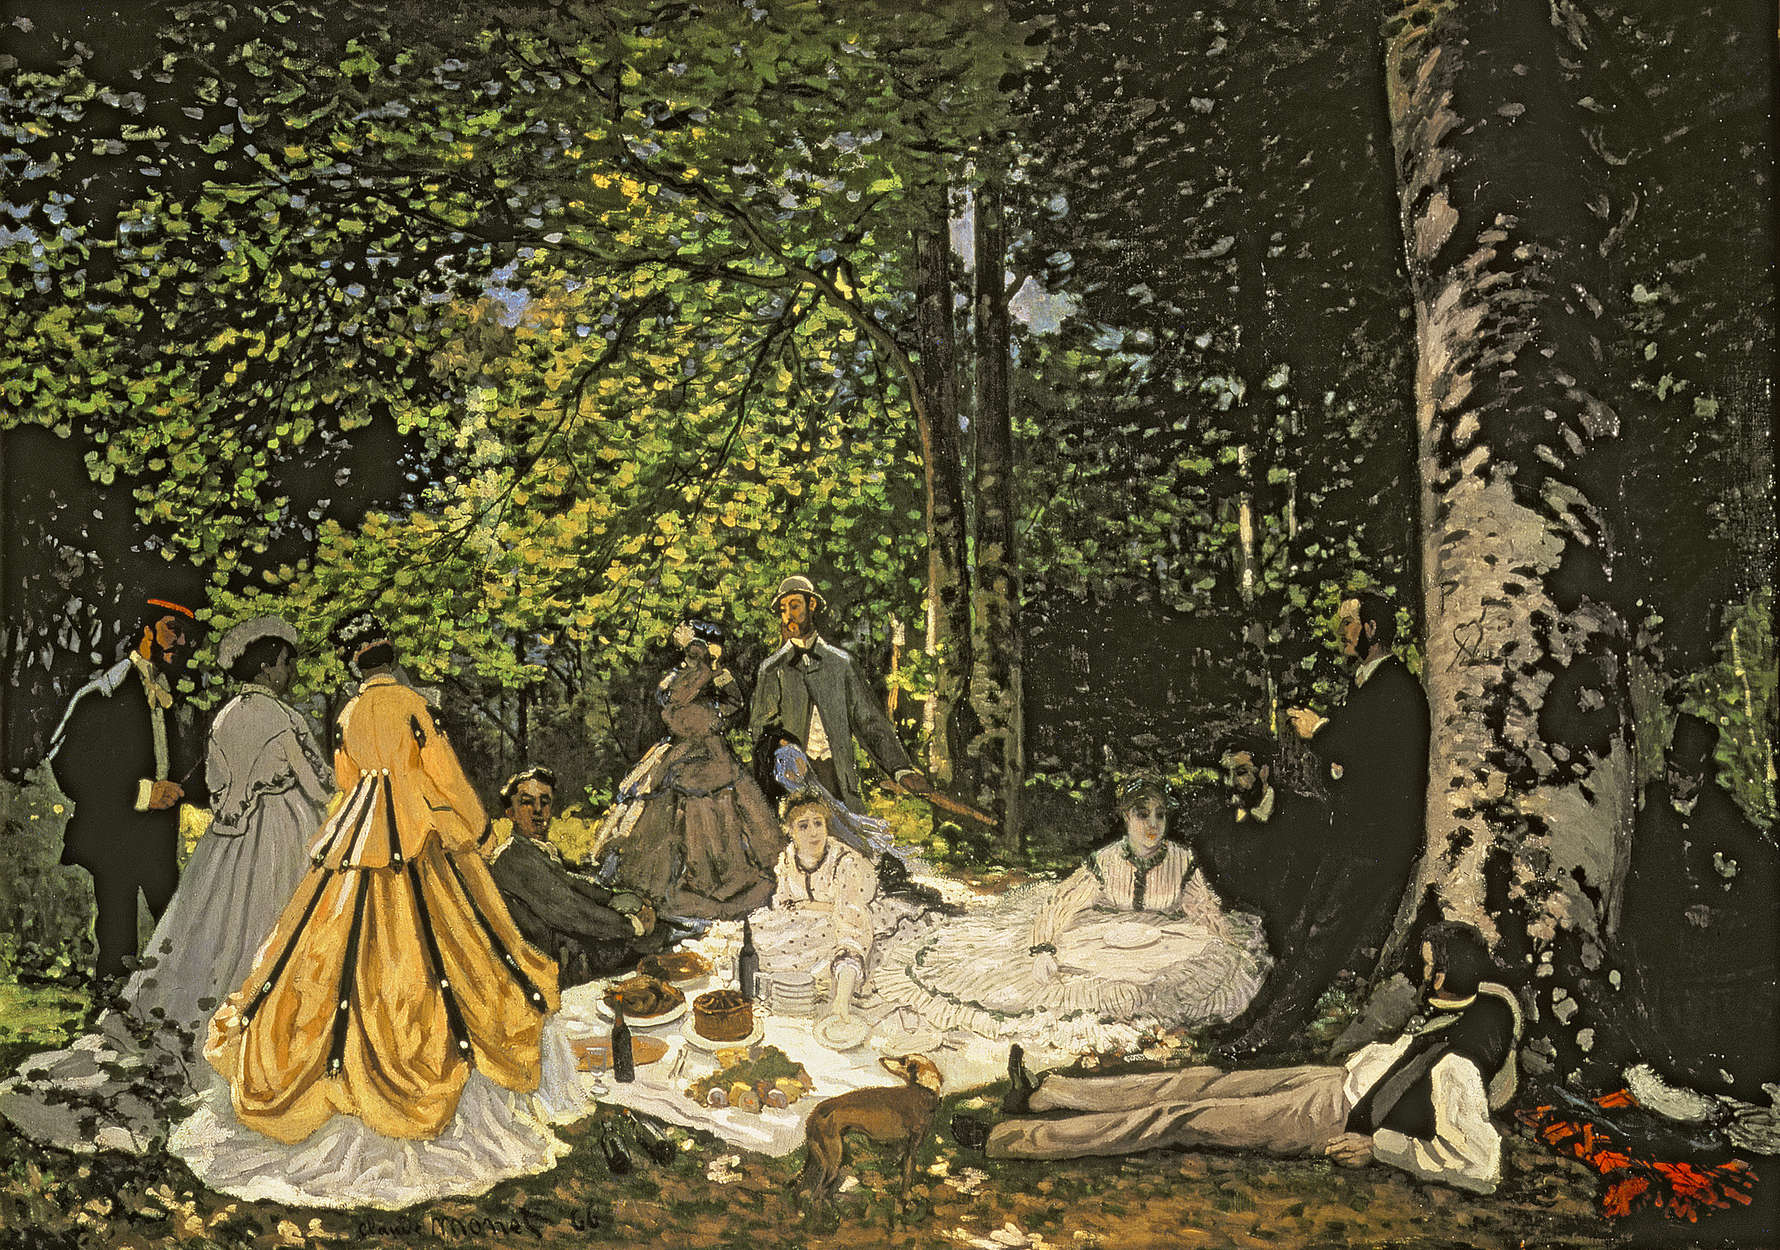             Mural "Desayuno en el verde" de Claude Monet
        